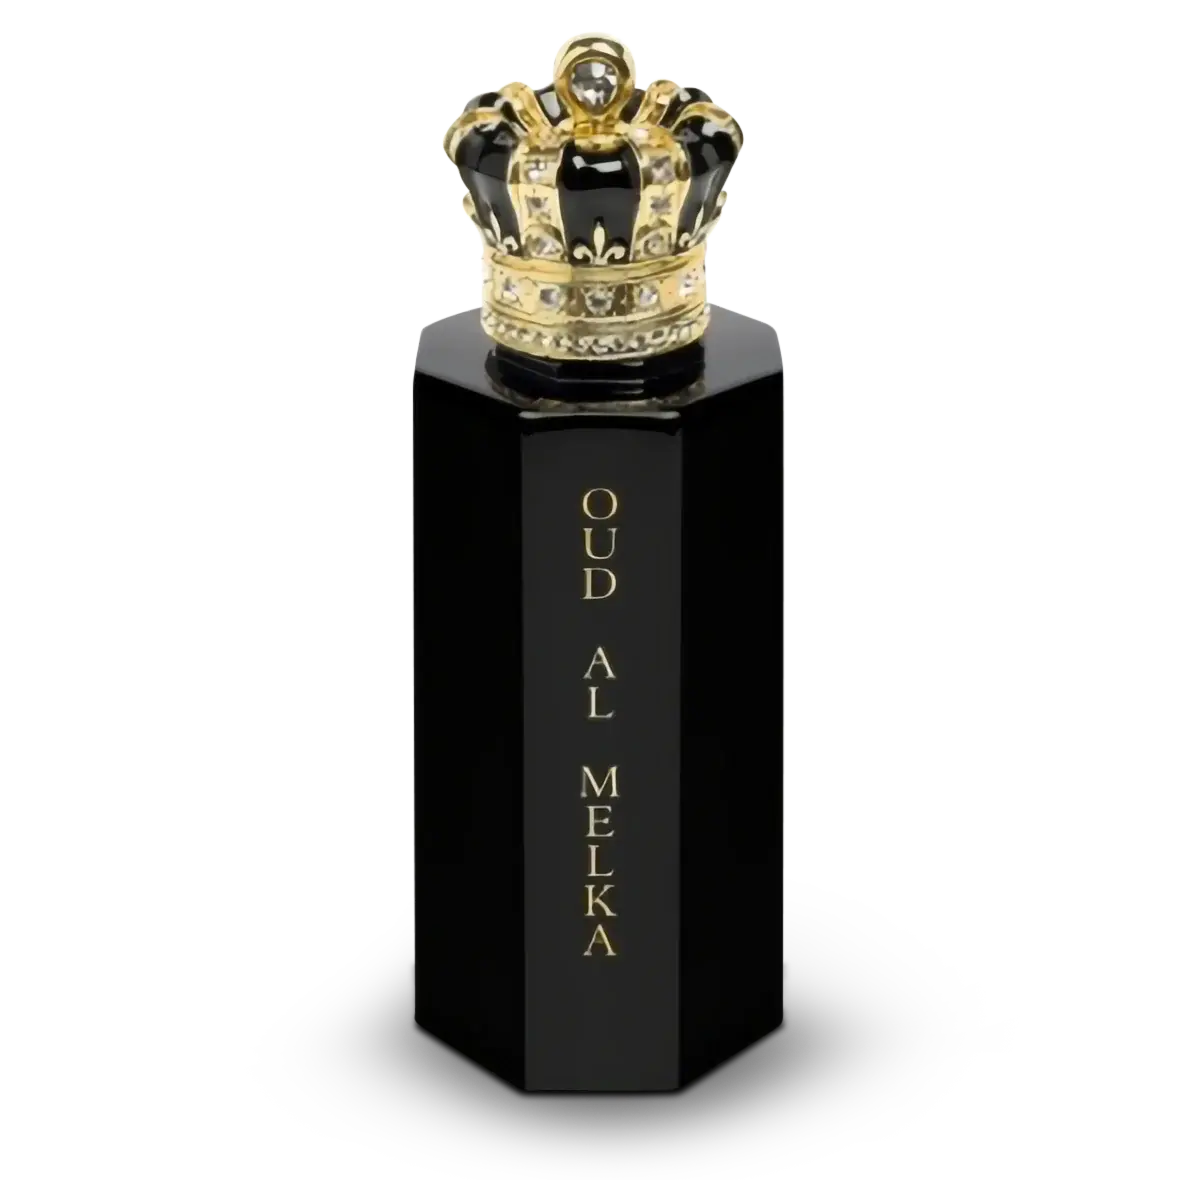 Royal Crown |  Oud Al Melka | Parfum